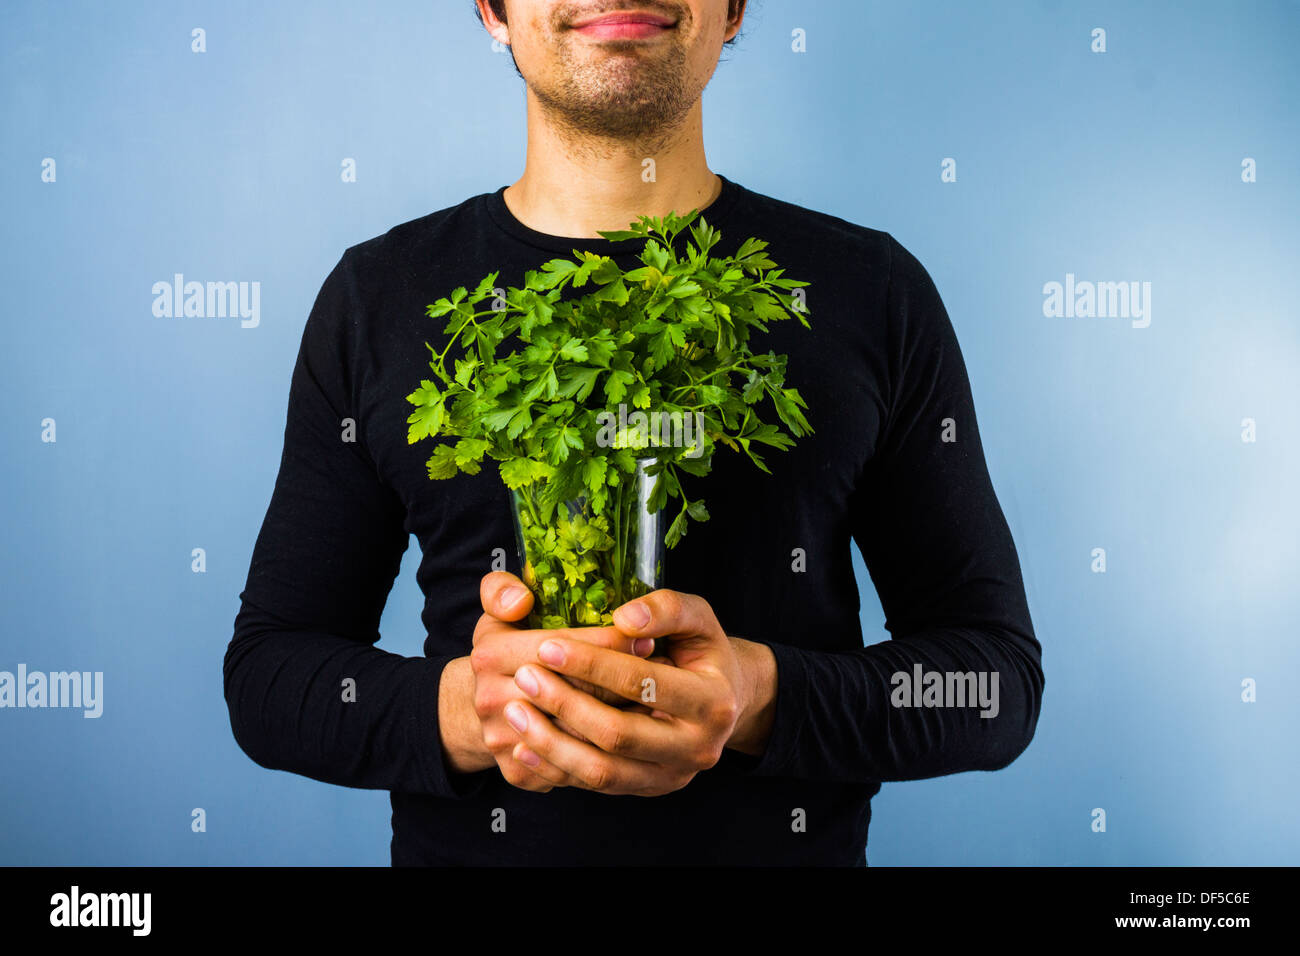 Травы польза для мужчин. Растения и человек. Человек с цветами. Пучок зелени в руках. Мужчина с зеленью.